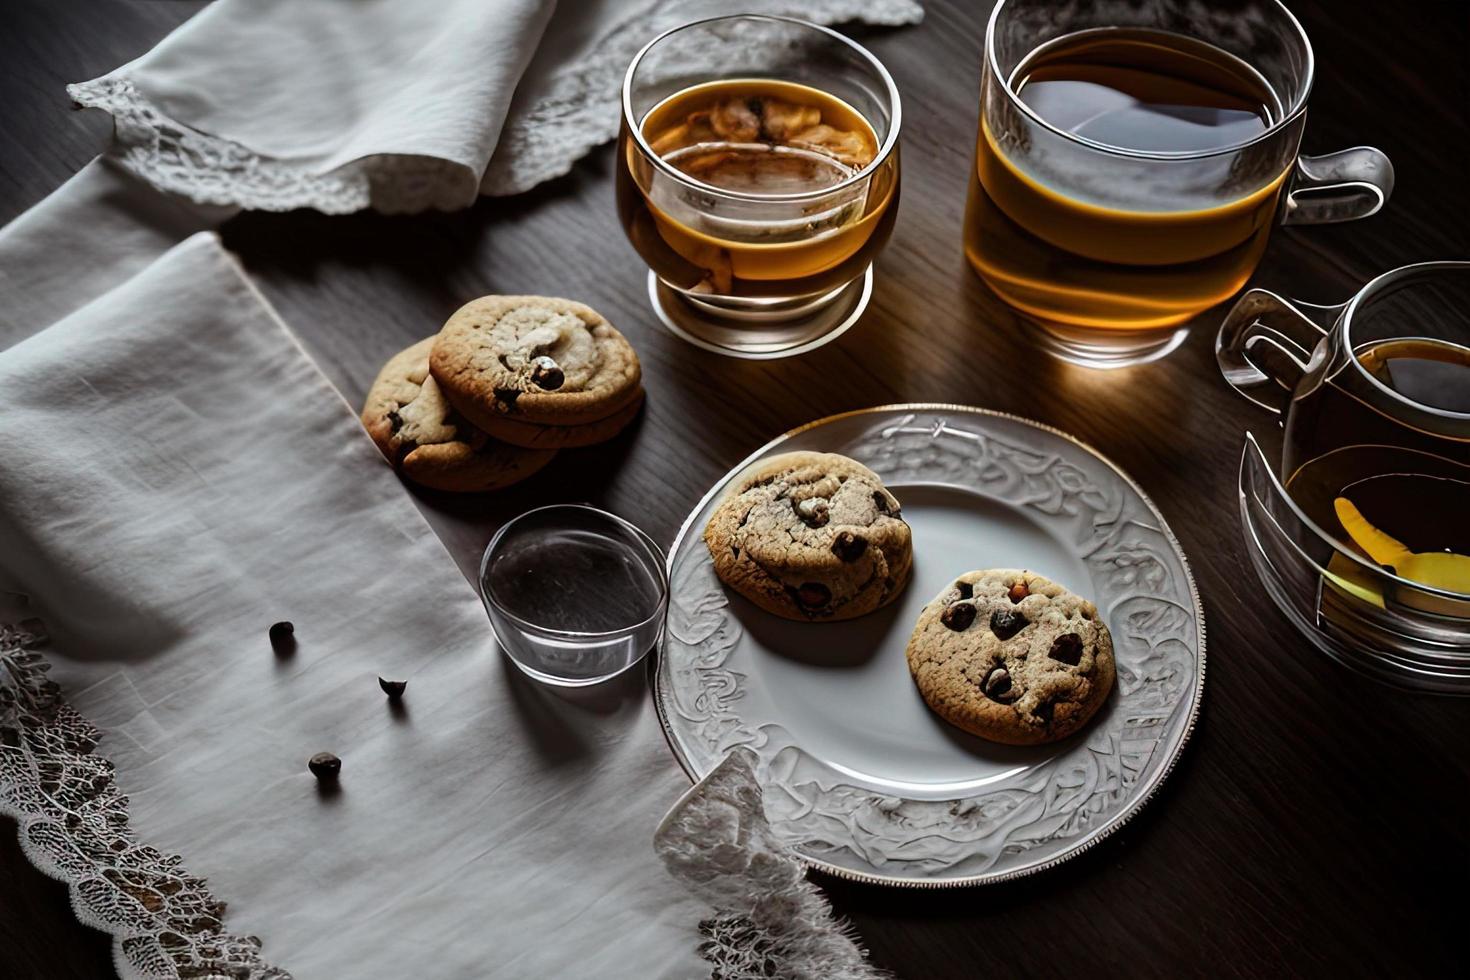 fotografía de un plato de galletas y un vaso de té sobre una mesa con un paño y una servilleta encima foto